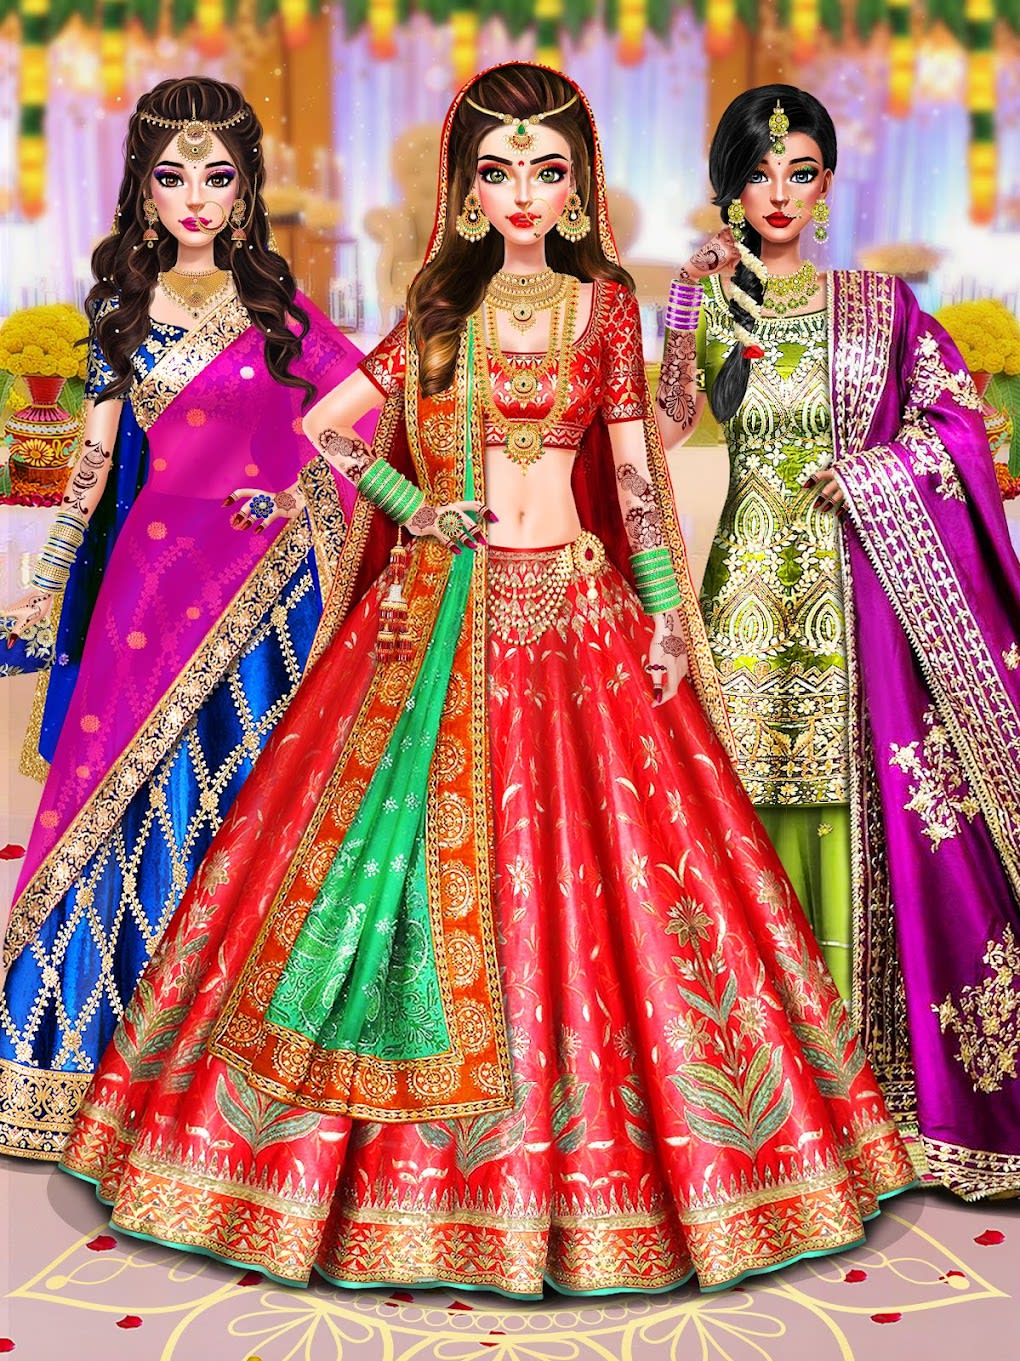 Indian Wedding Dress up games - Téléchargement de l'APK pour Android |  Aptoide